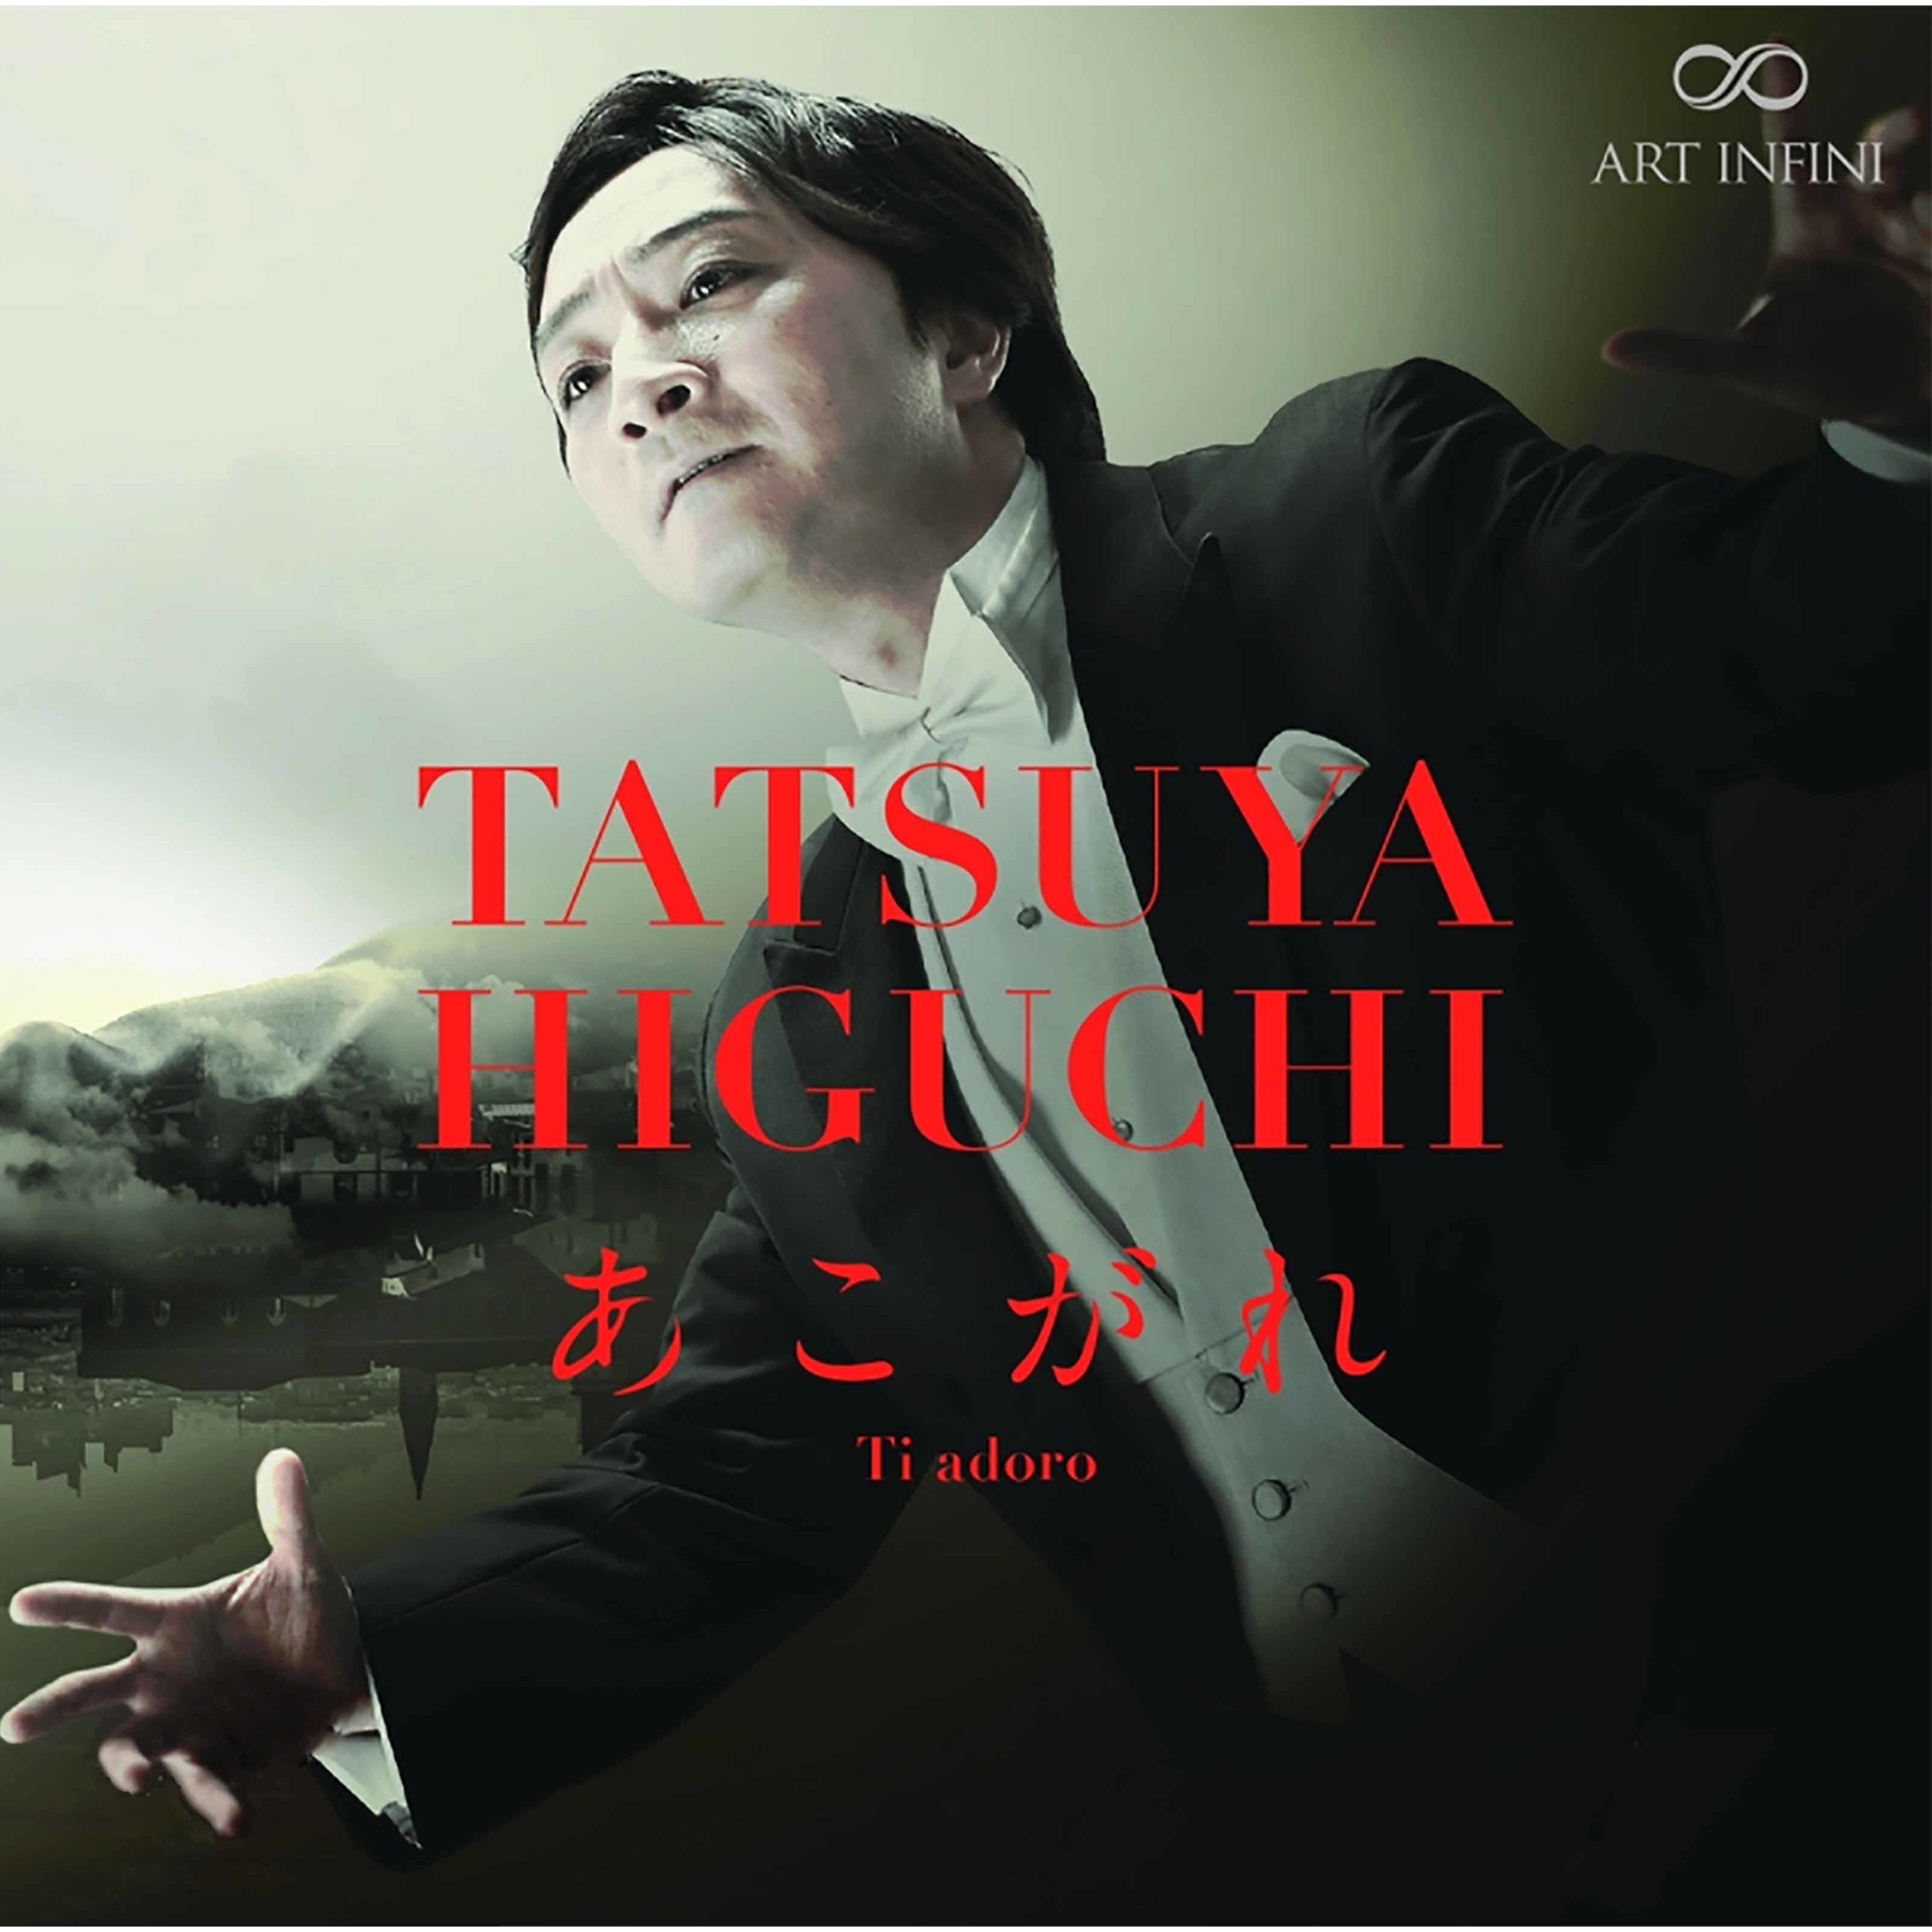 Tatsuya Higuchi – Ti adoro